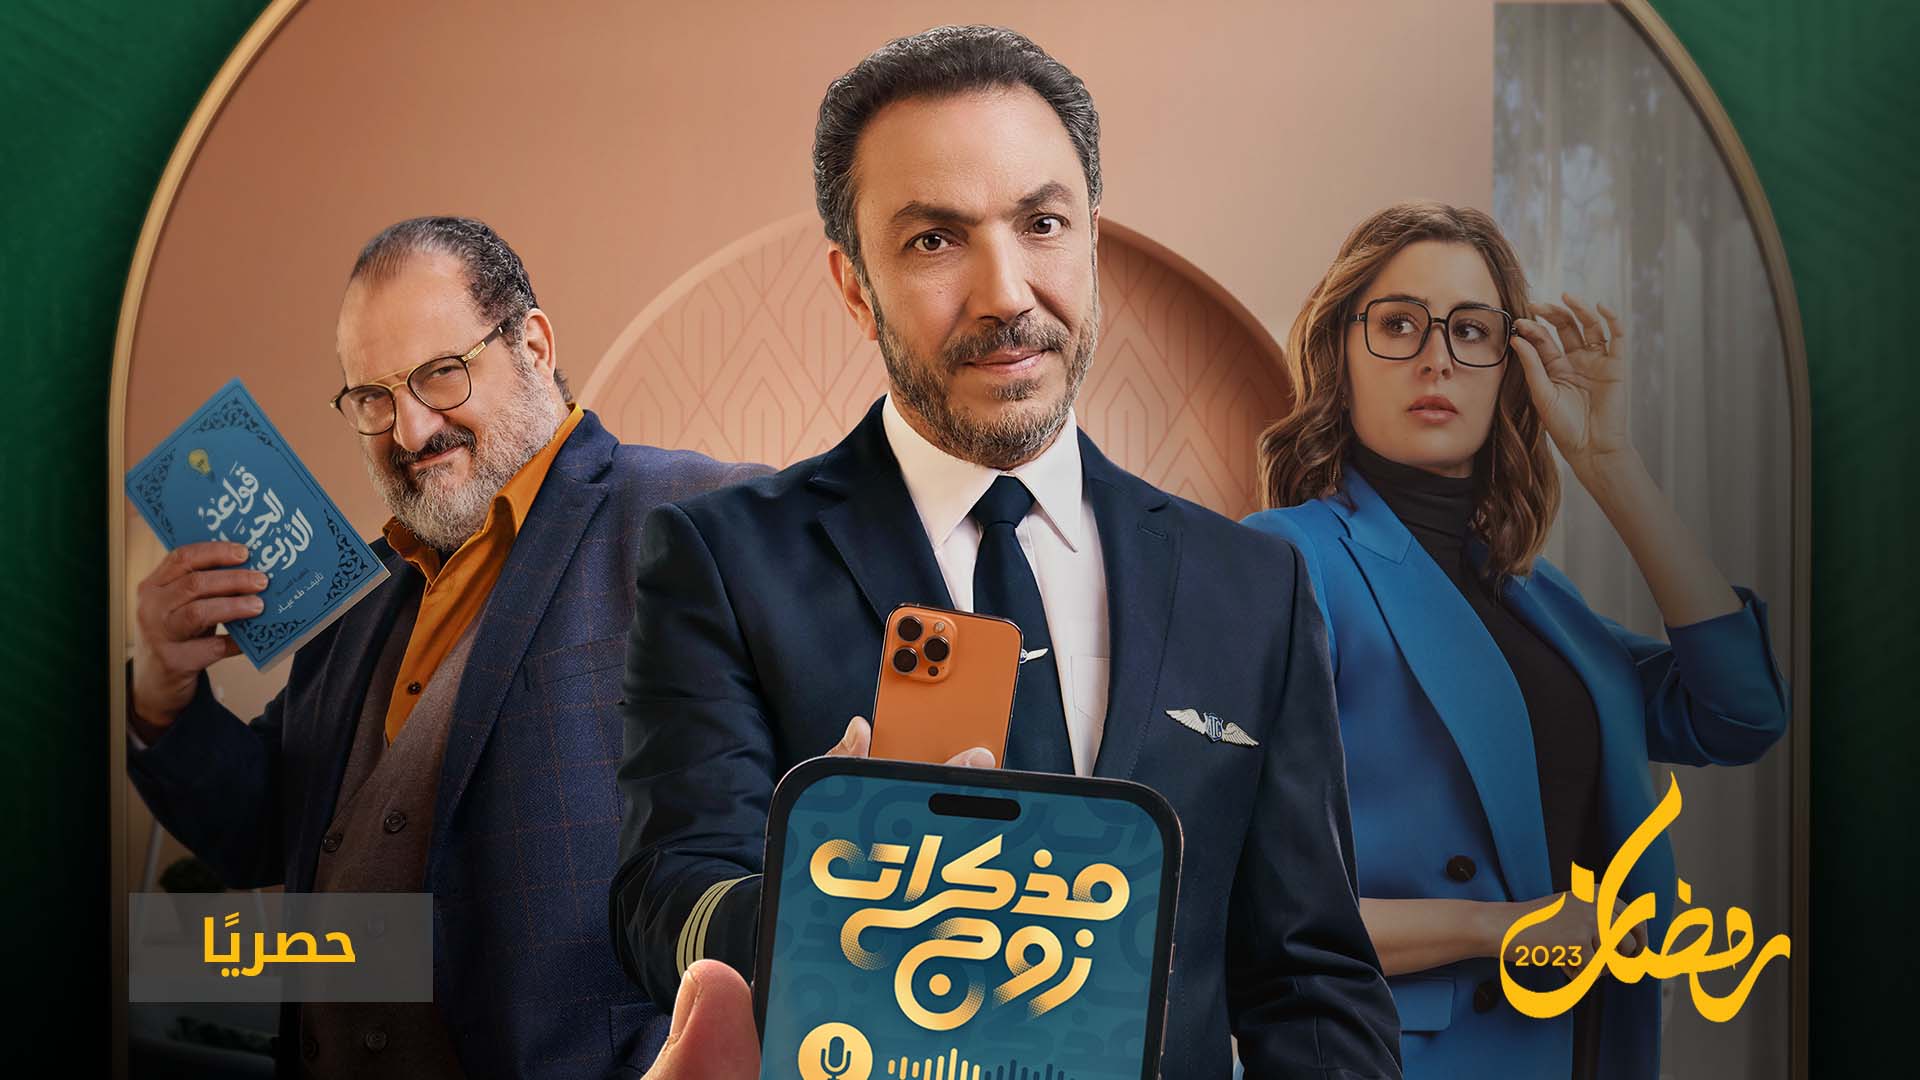 فيو تقدّم باقة متنوعة من المسلسلات والأفلام العربية الجديدة خلال شهر رمضان المبارك